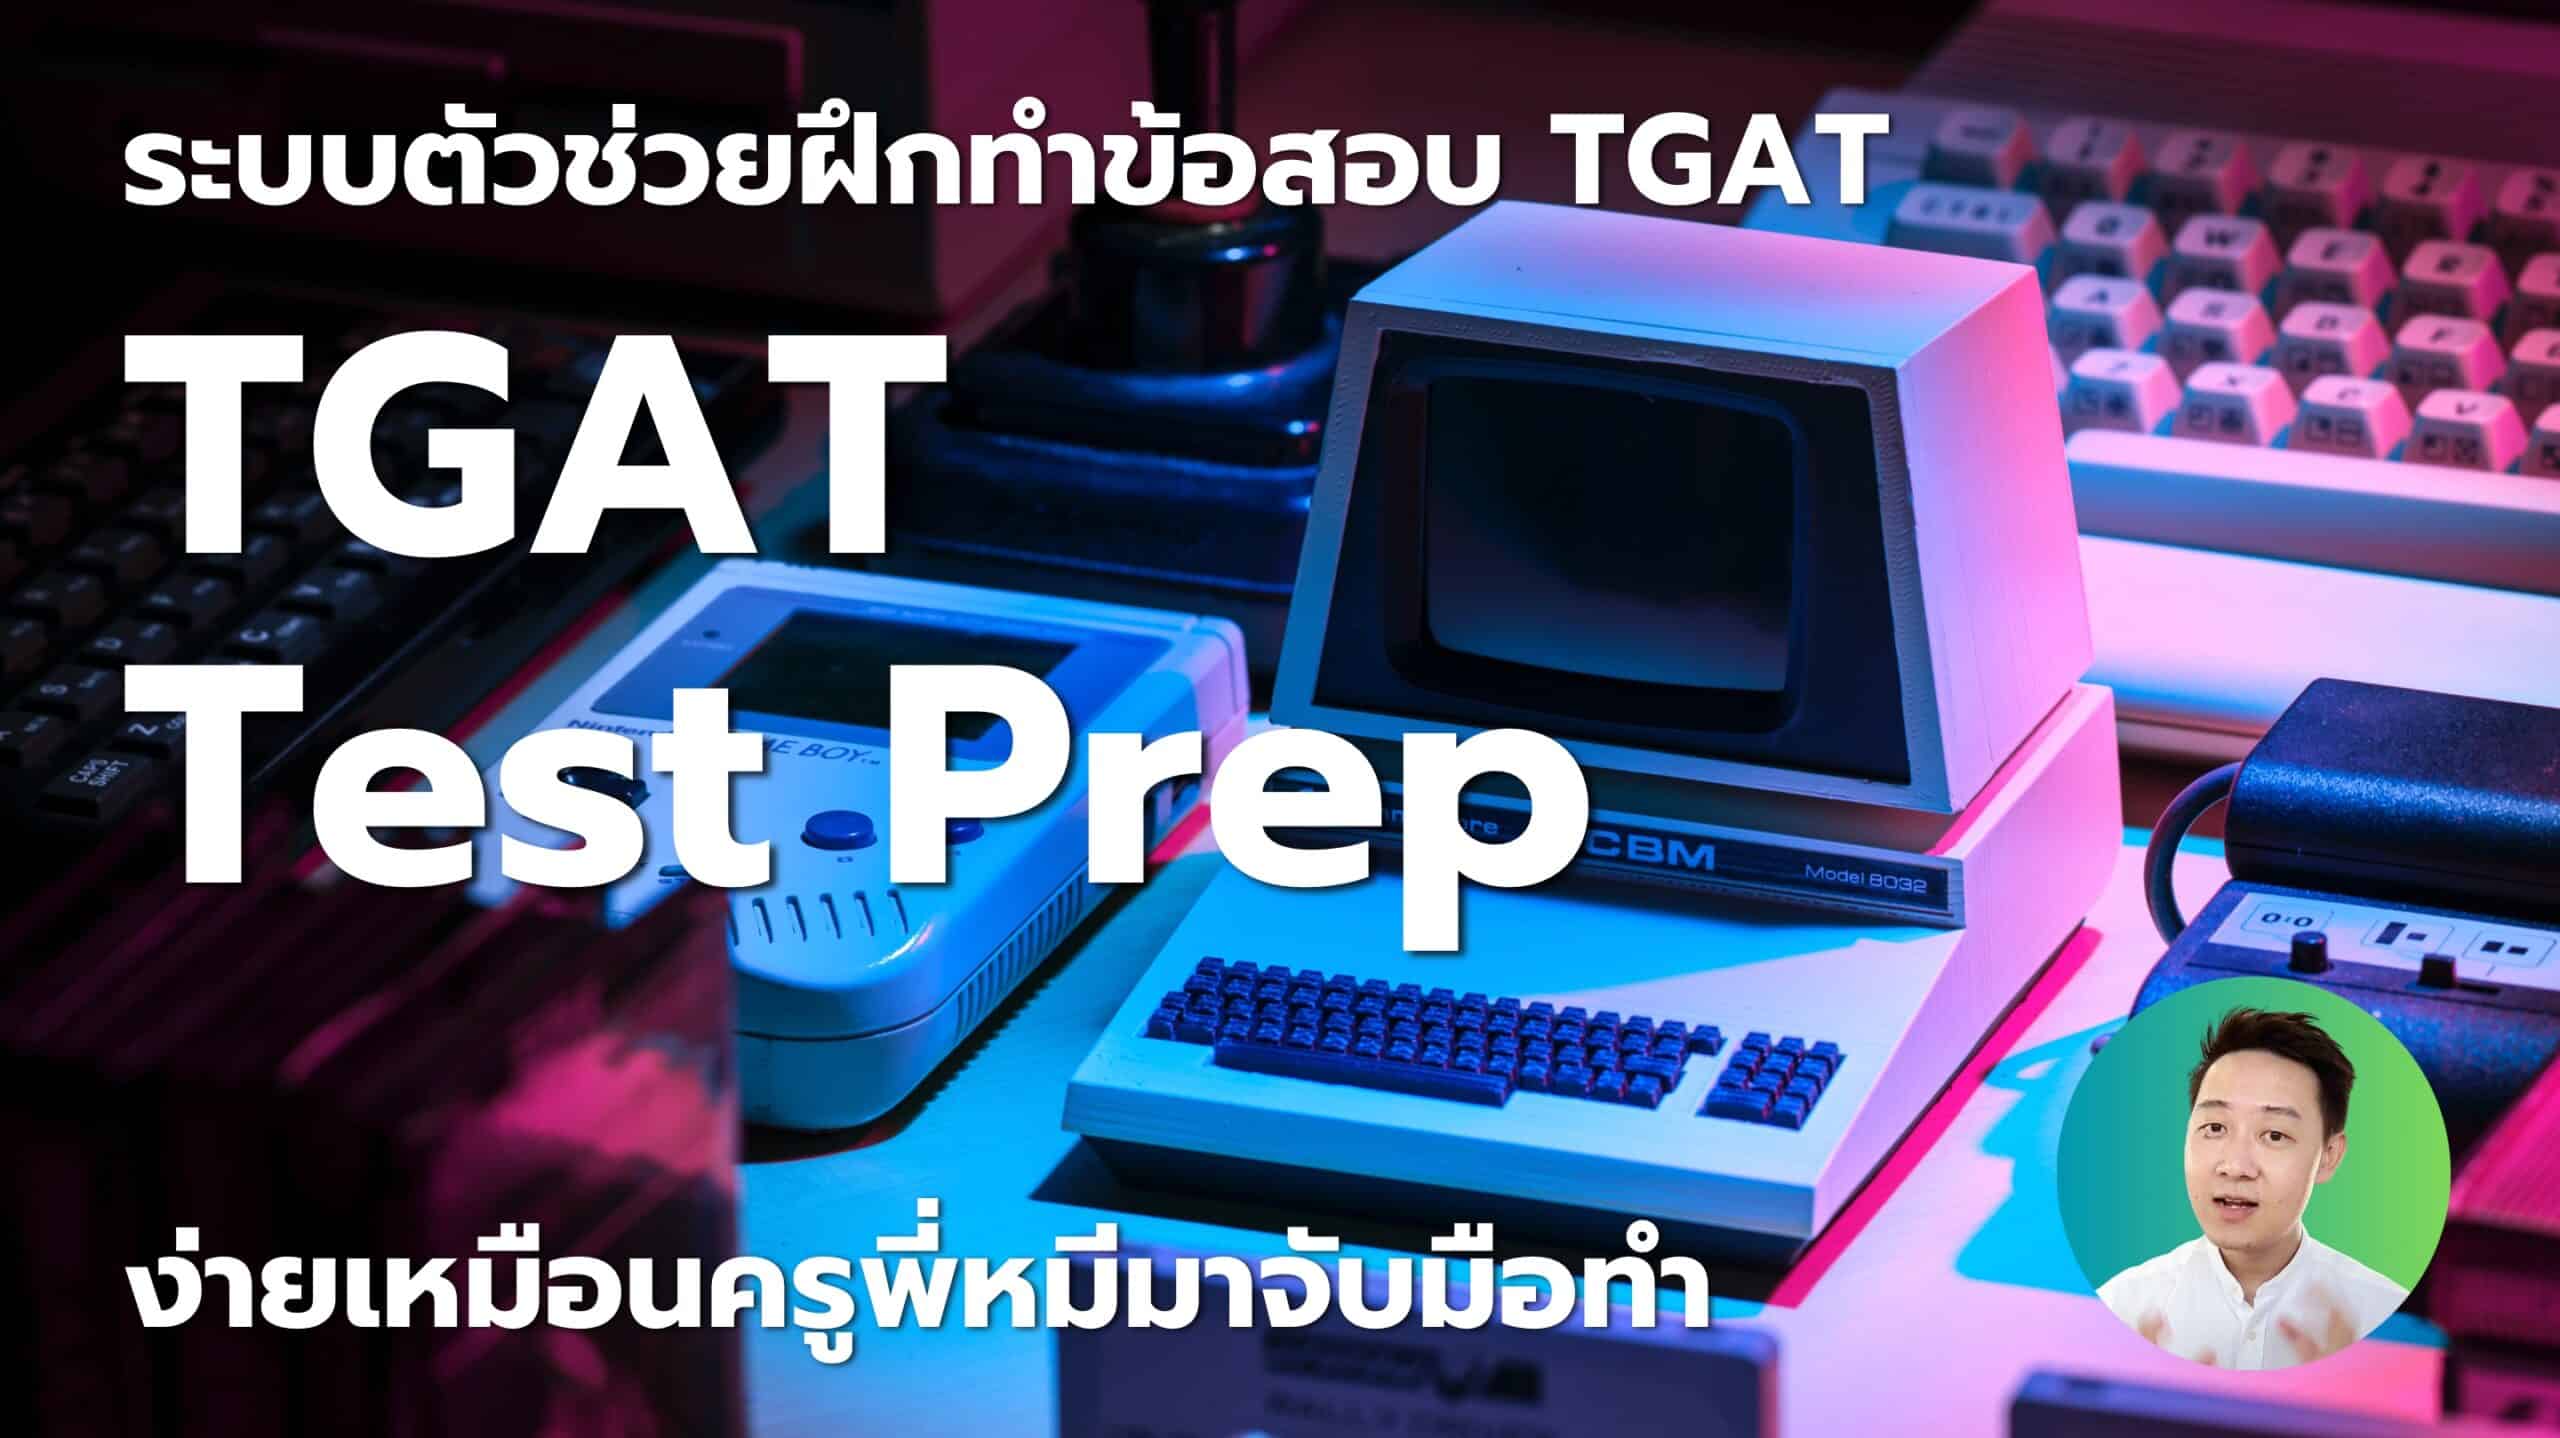 TGAT Test Prep ตัวช่วยฝึกทำข้อสอบ TGAT